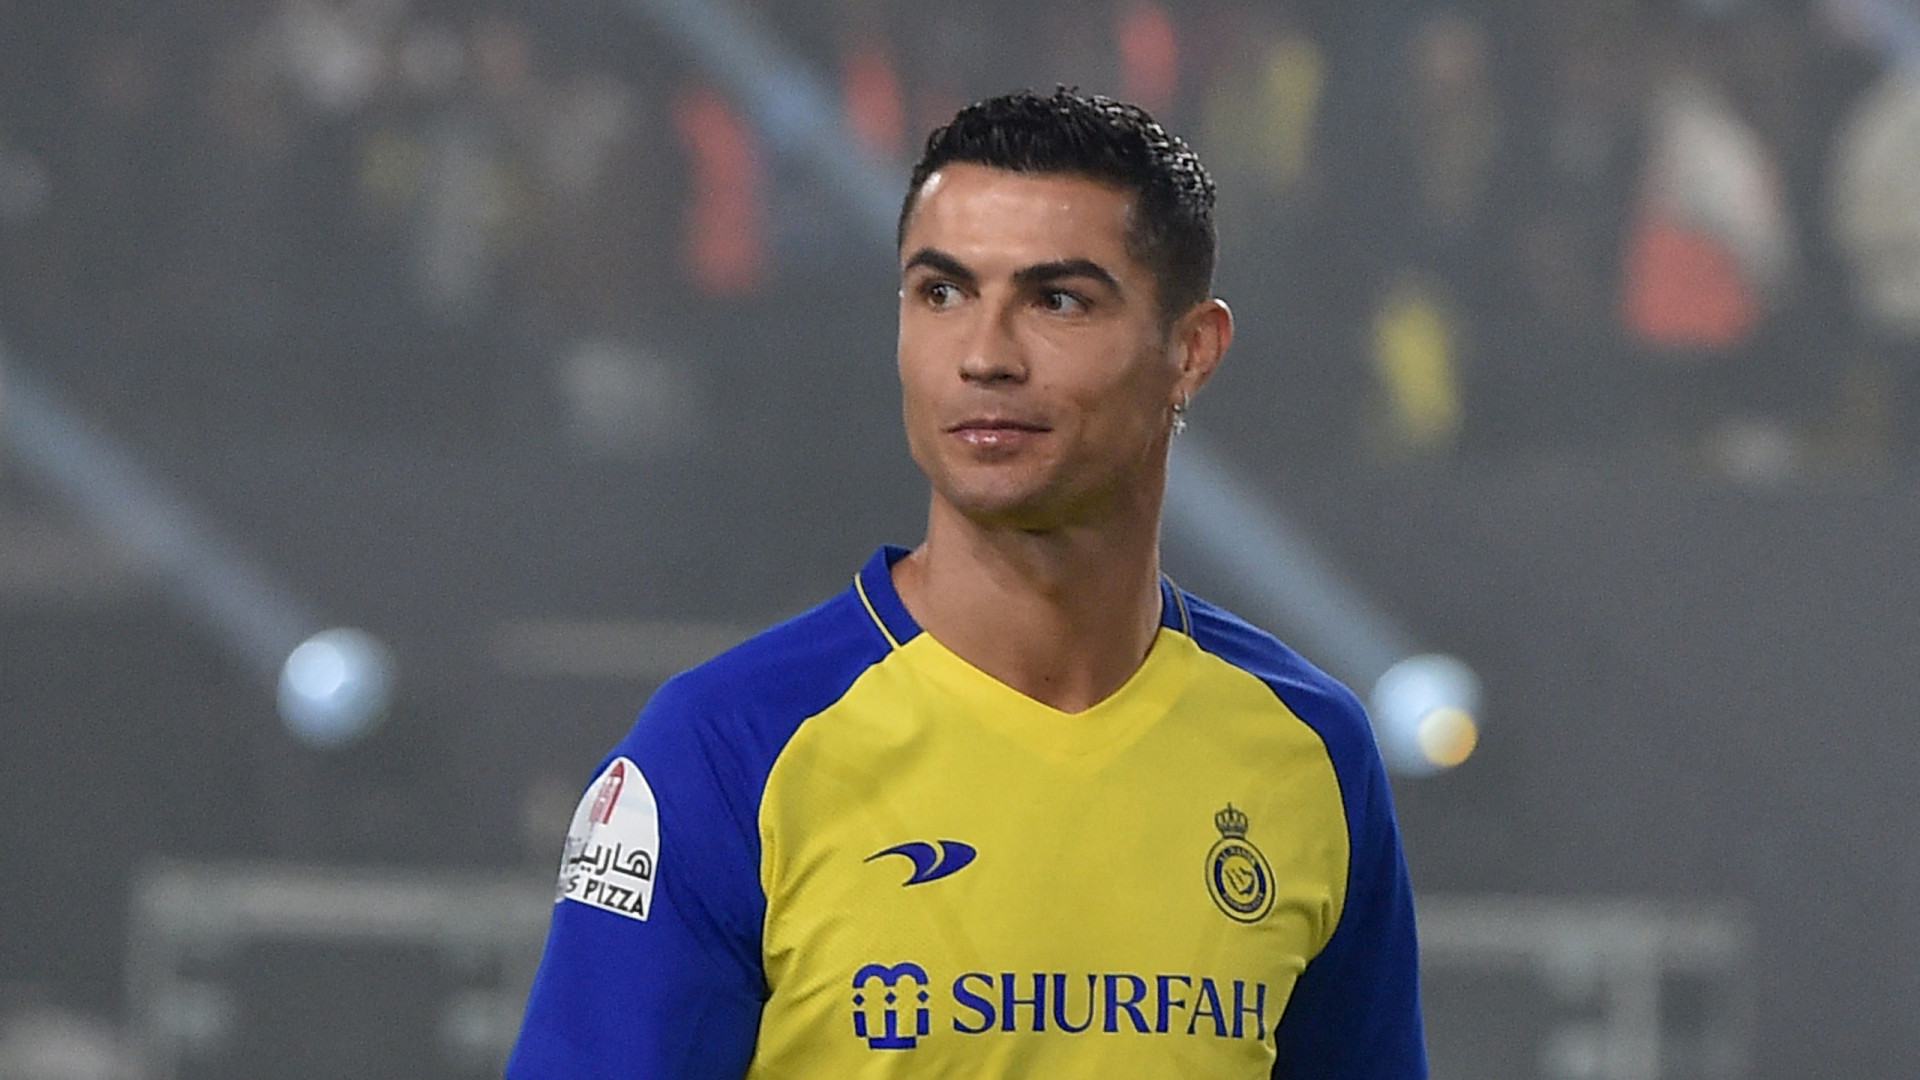 Suspenso, Cristiano Ronaldo só assiste jogo do Al Nassr e vê Talisca brilhar